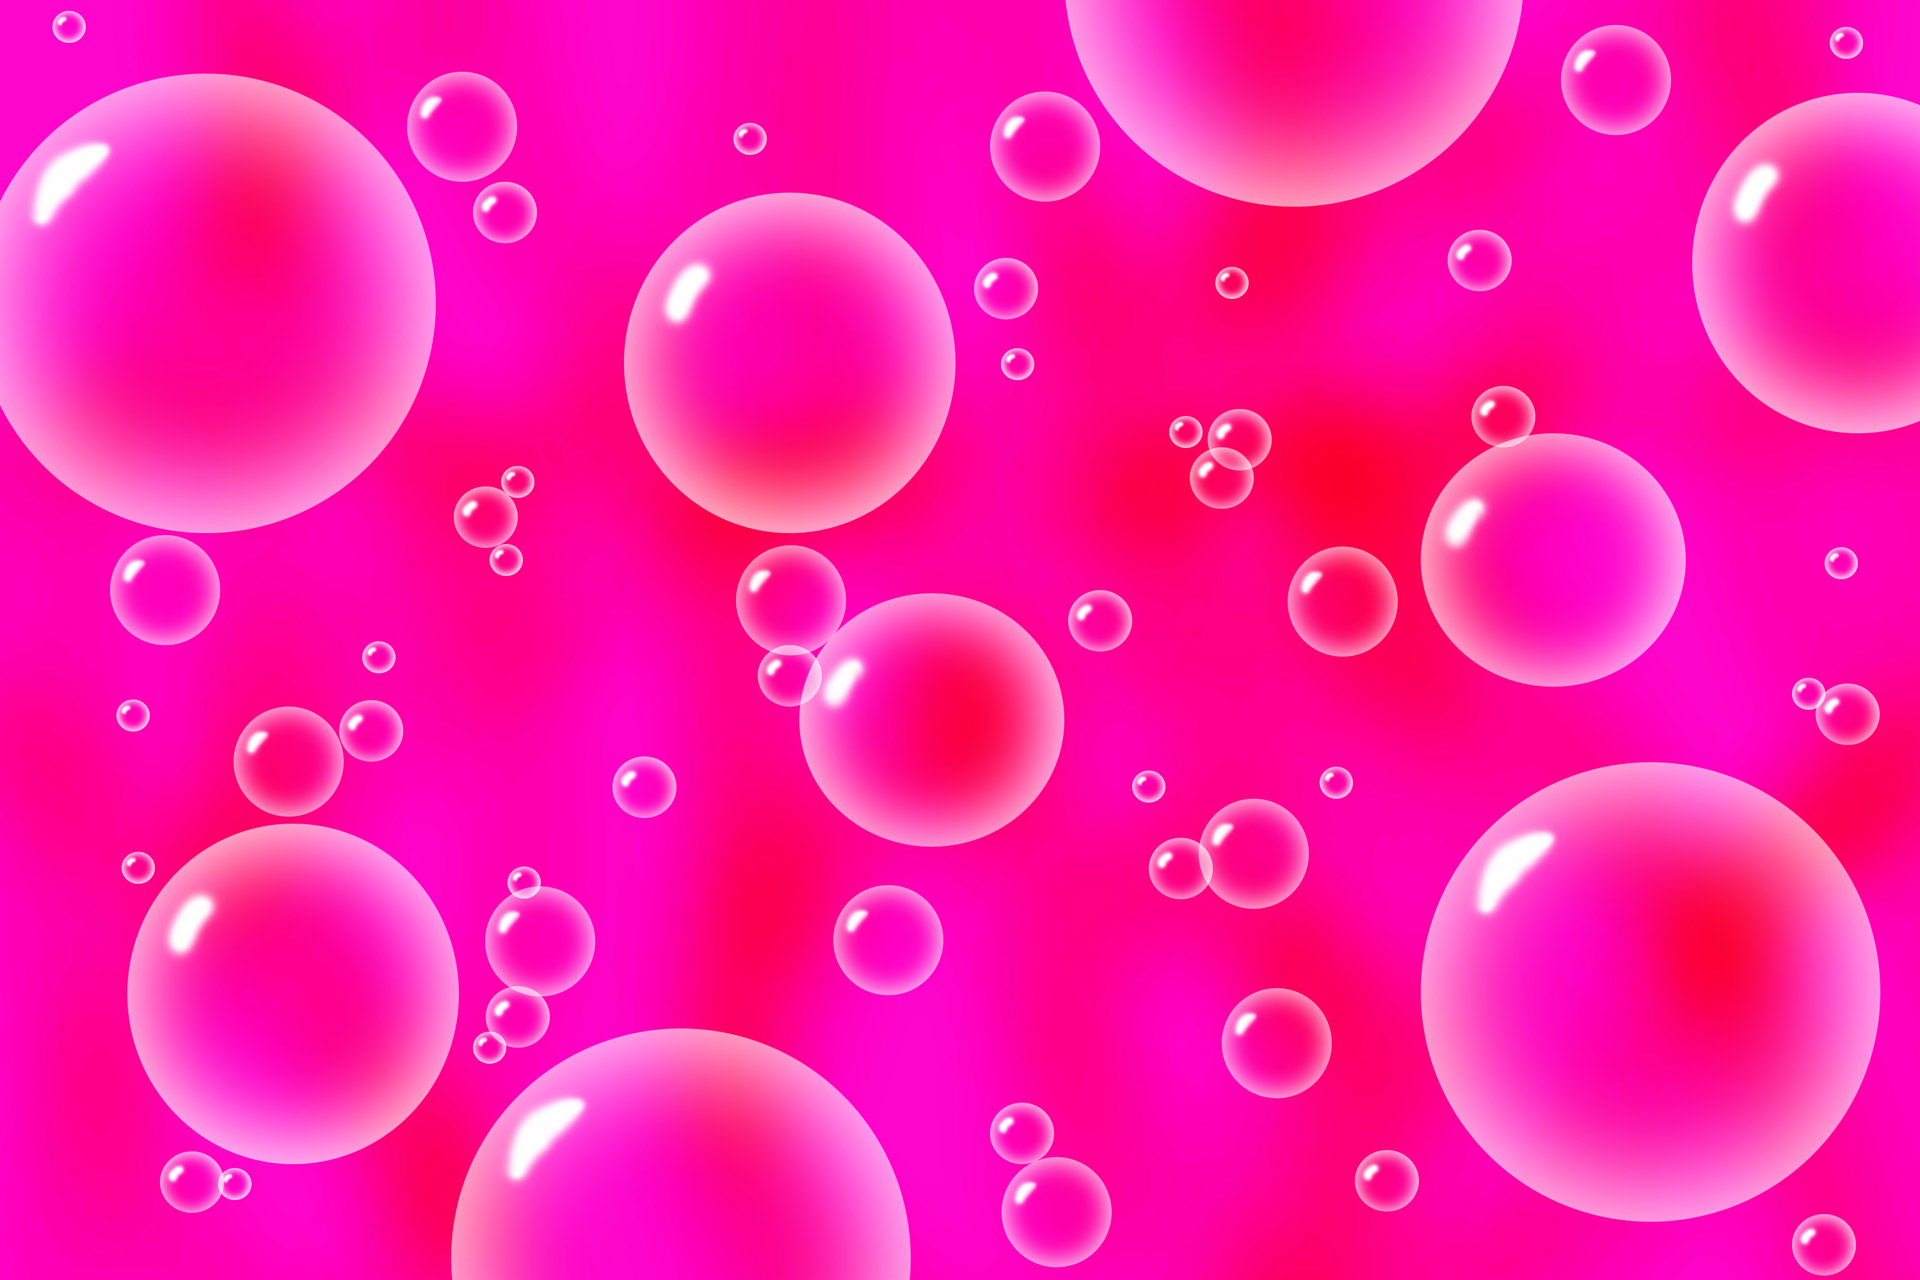 Burbulas,  Burbuliukai,  Karštas & Nbsp,  Pink,  Rožinis,  Raudona,  Rožinis & Nbsp,  Fonas,  Fonas,  Burbuliukai Ant Rožinio Fono